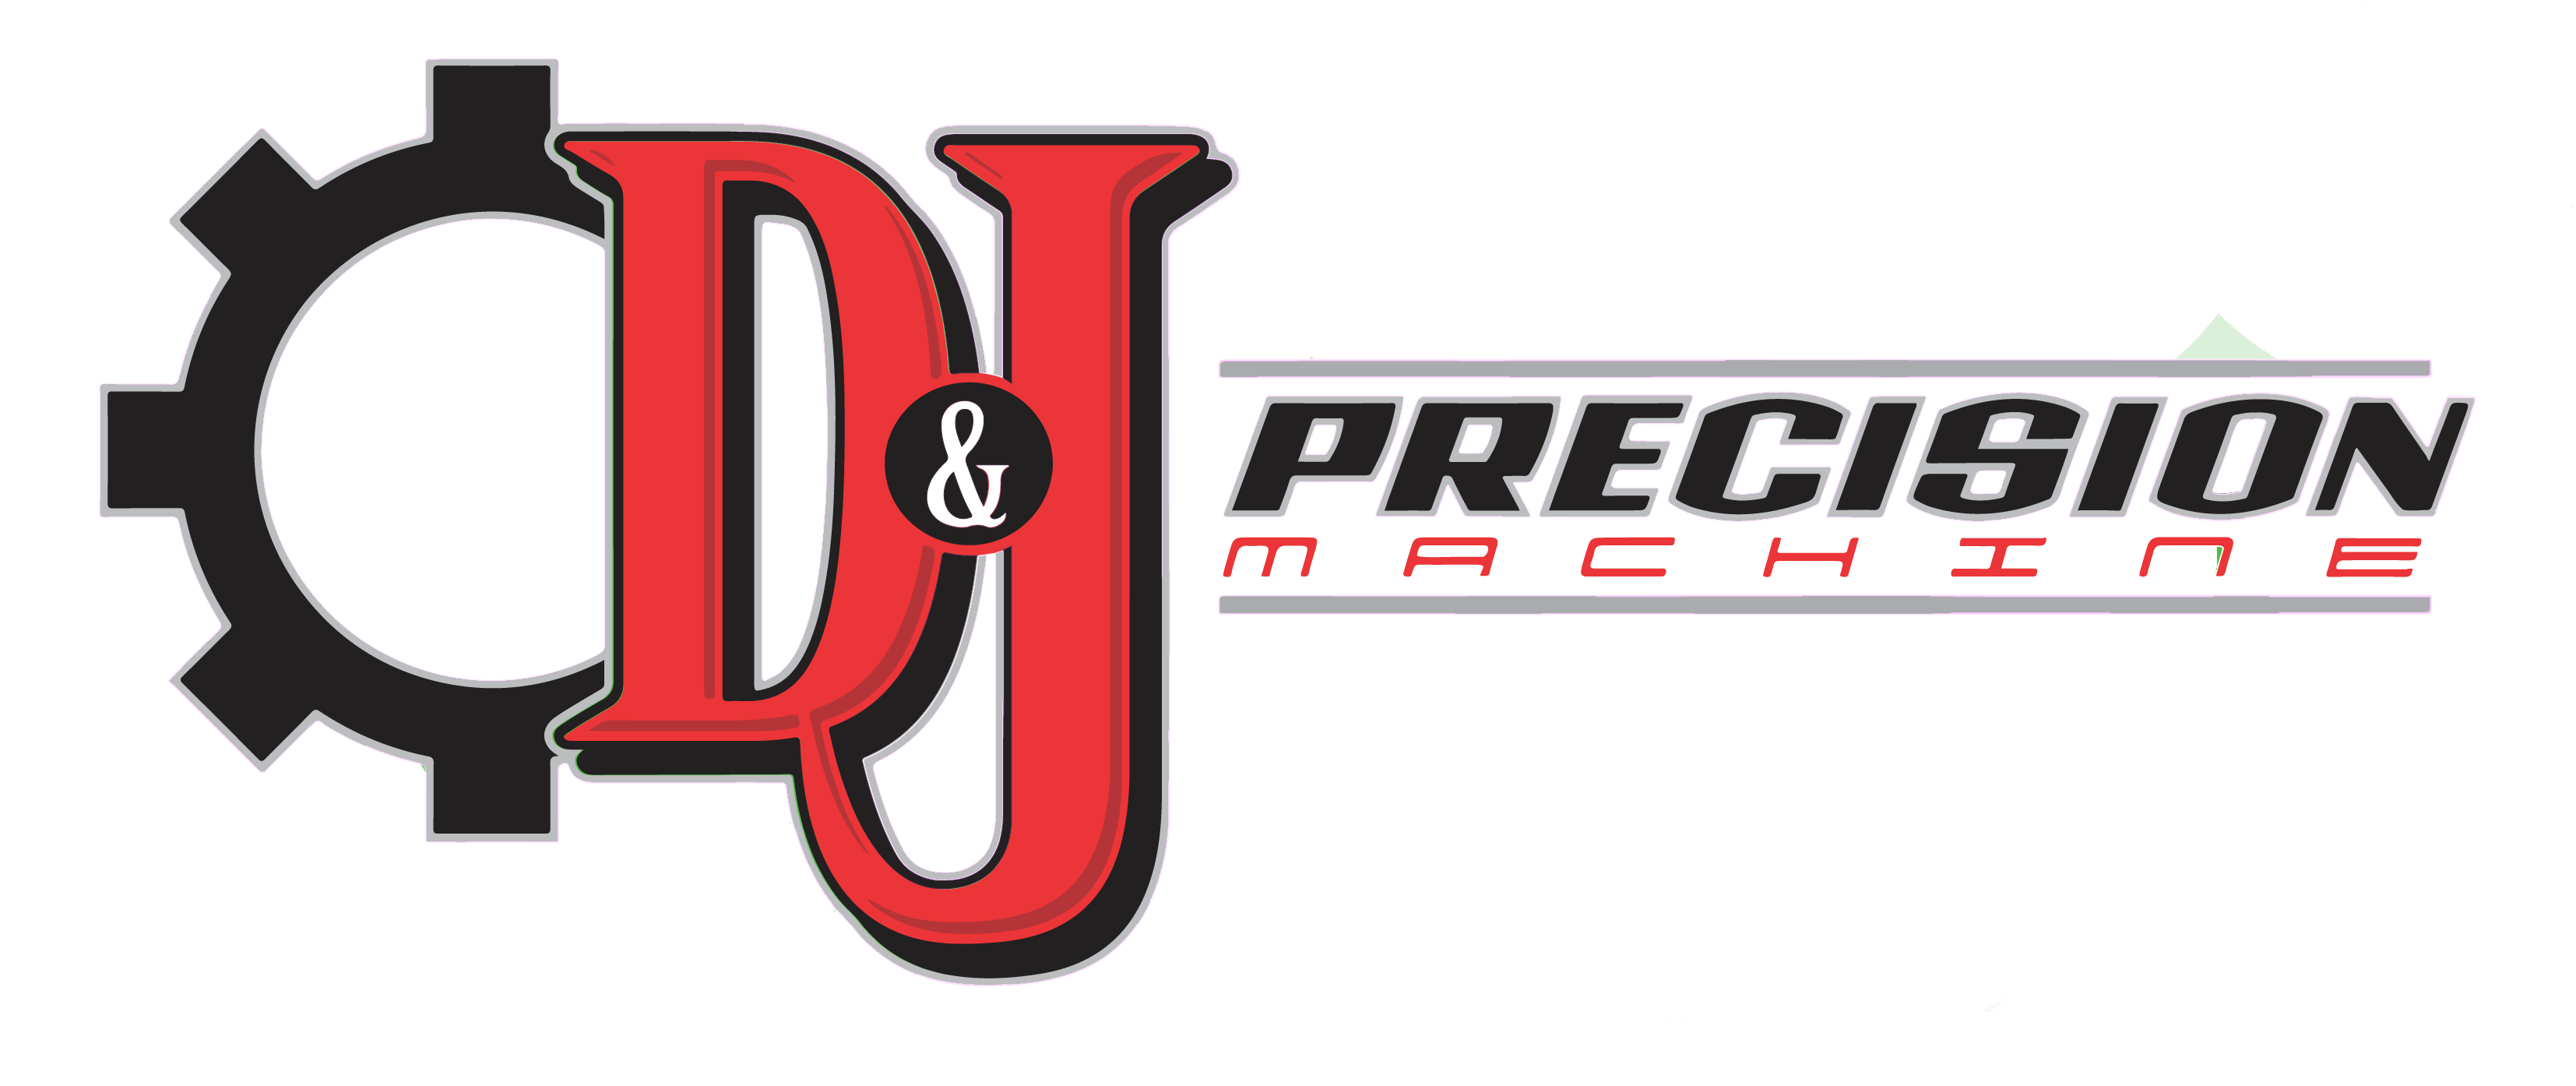 D&J Precision Machine